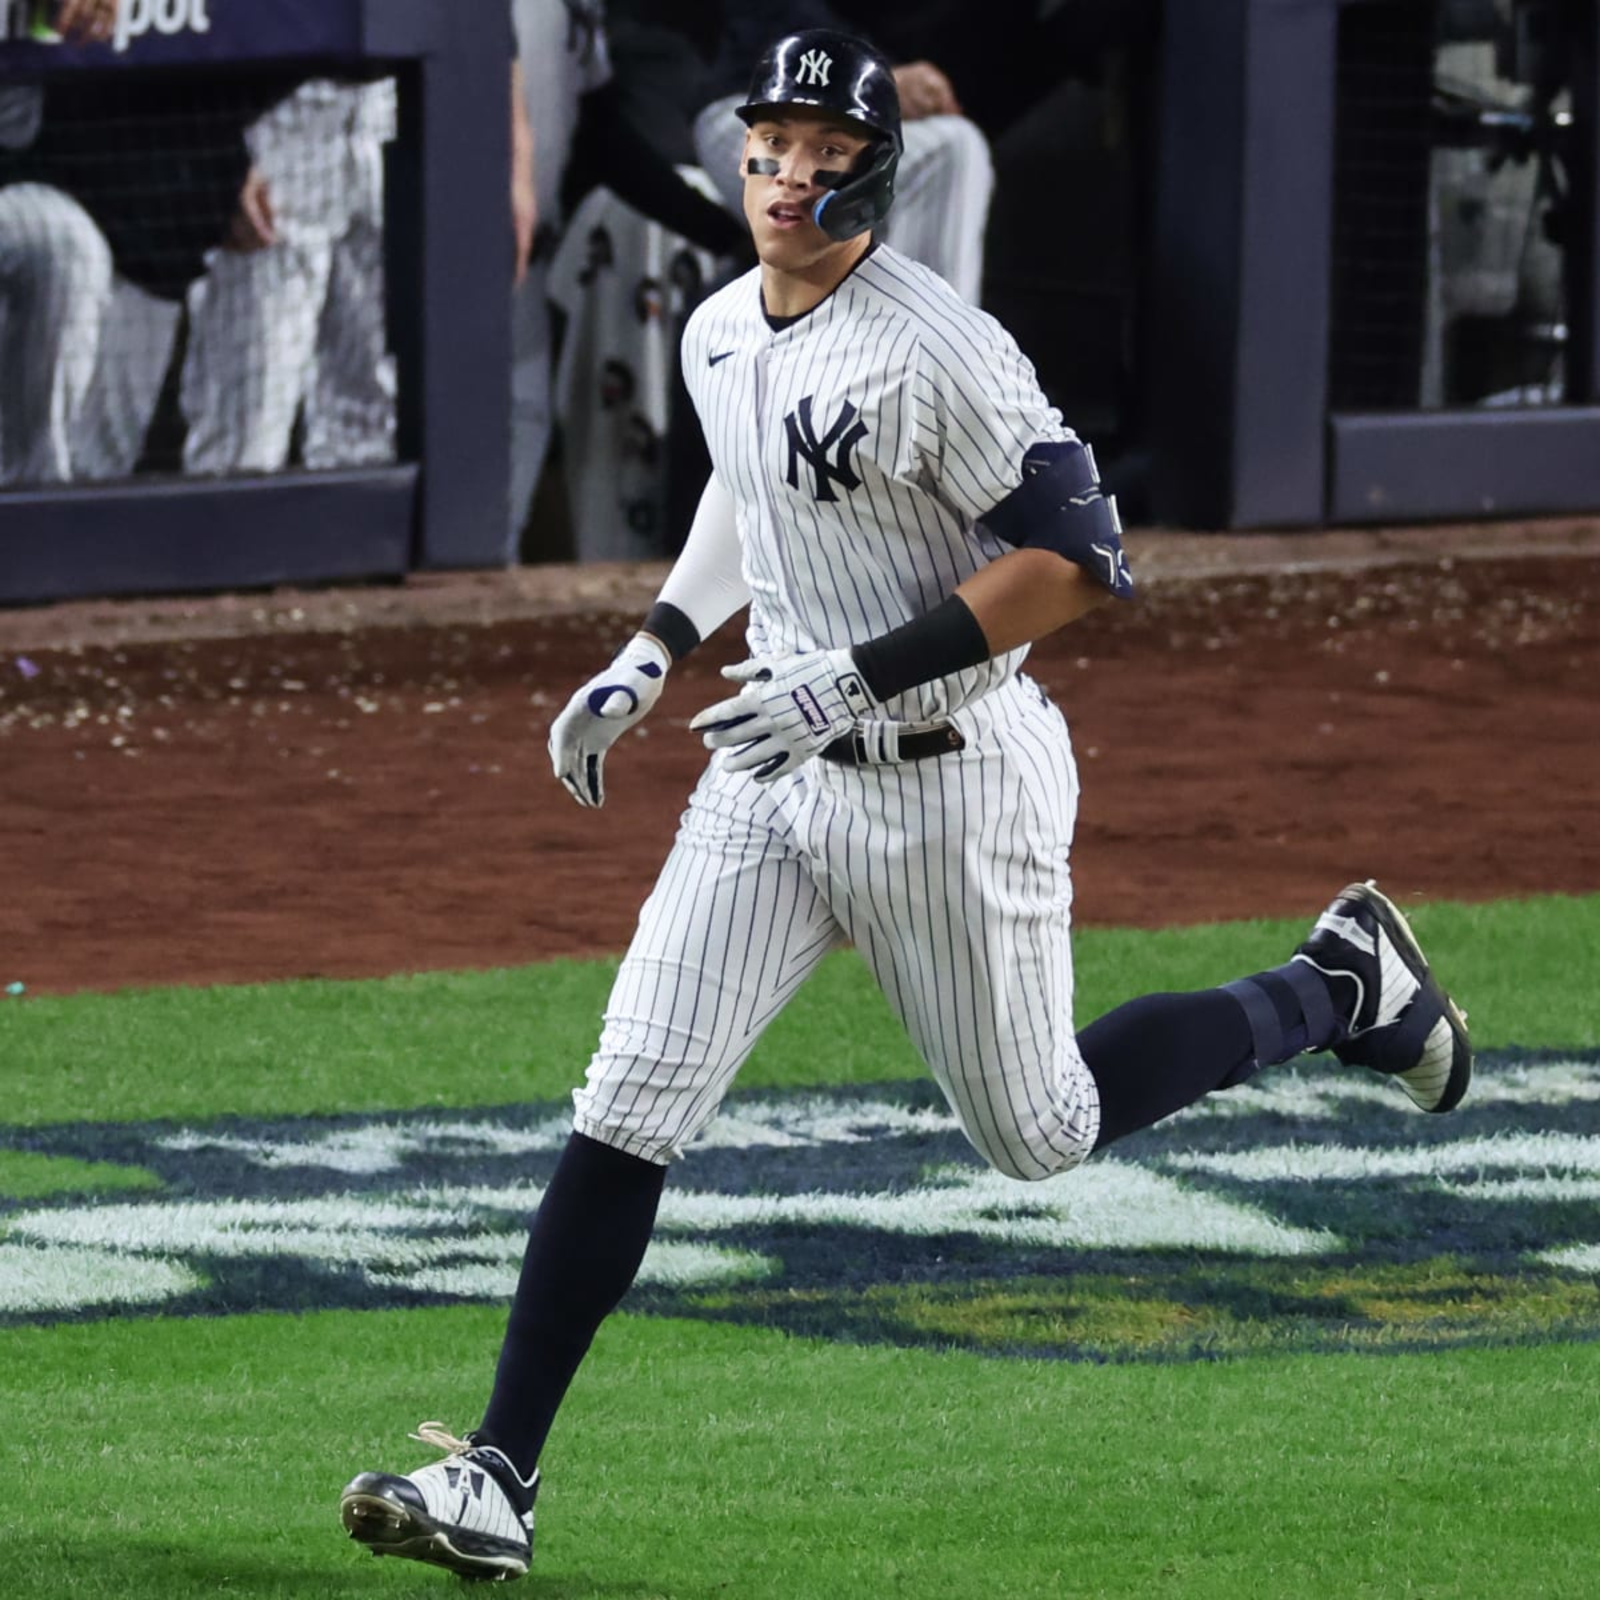 Yankees: Imagining Aaron Judge in another team's uniform